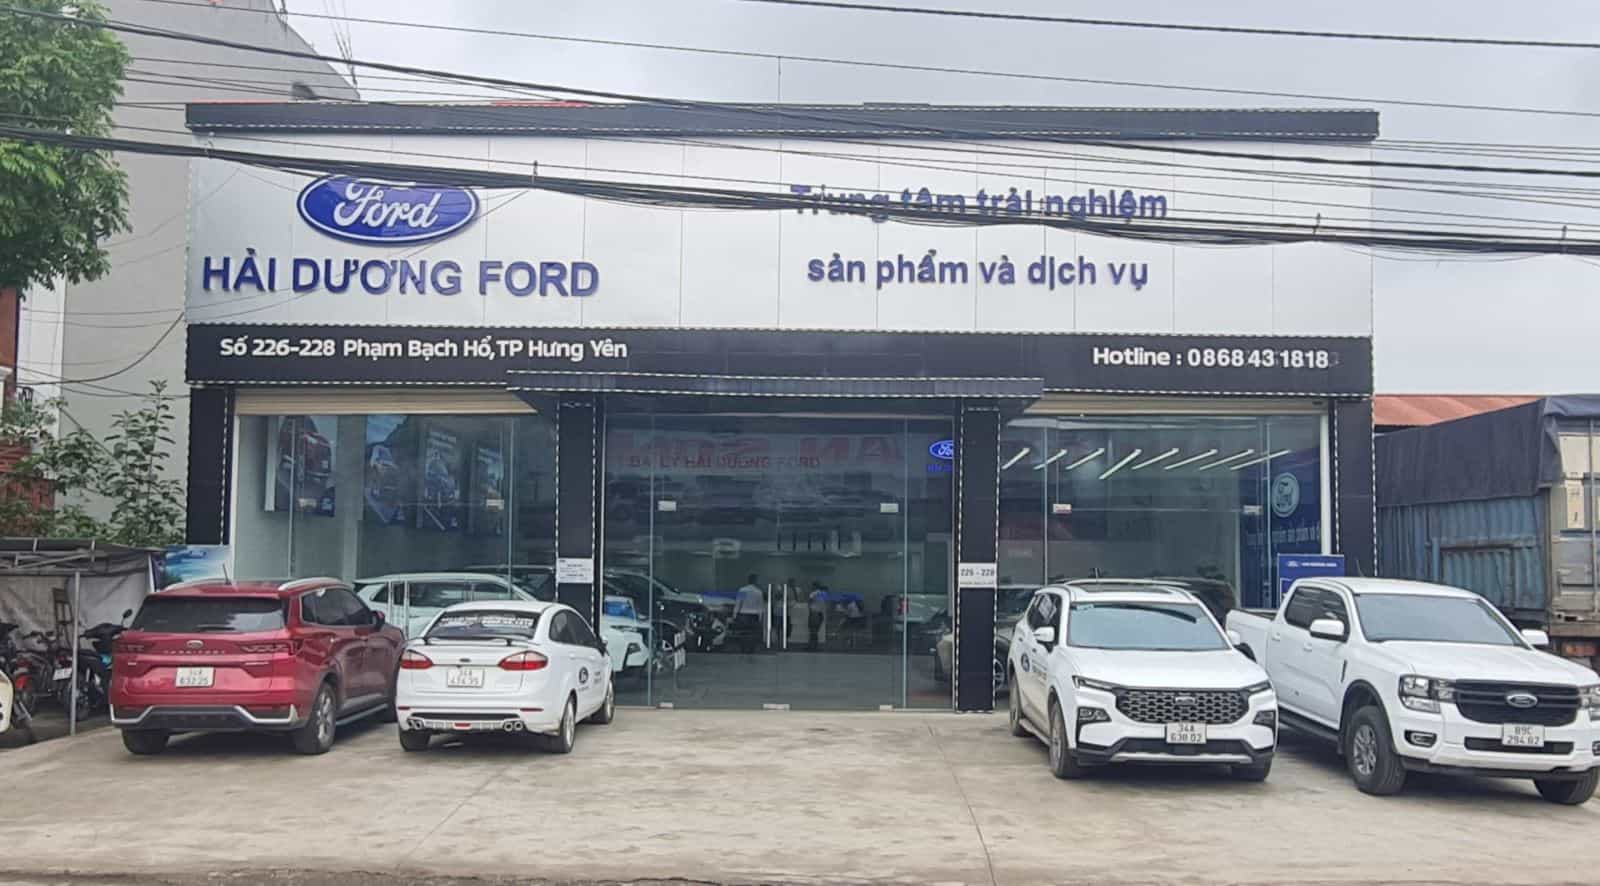 Ford Hưng Yên